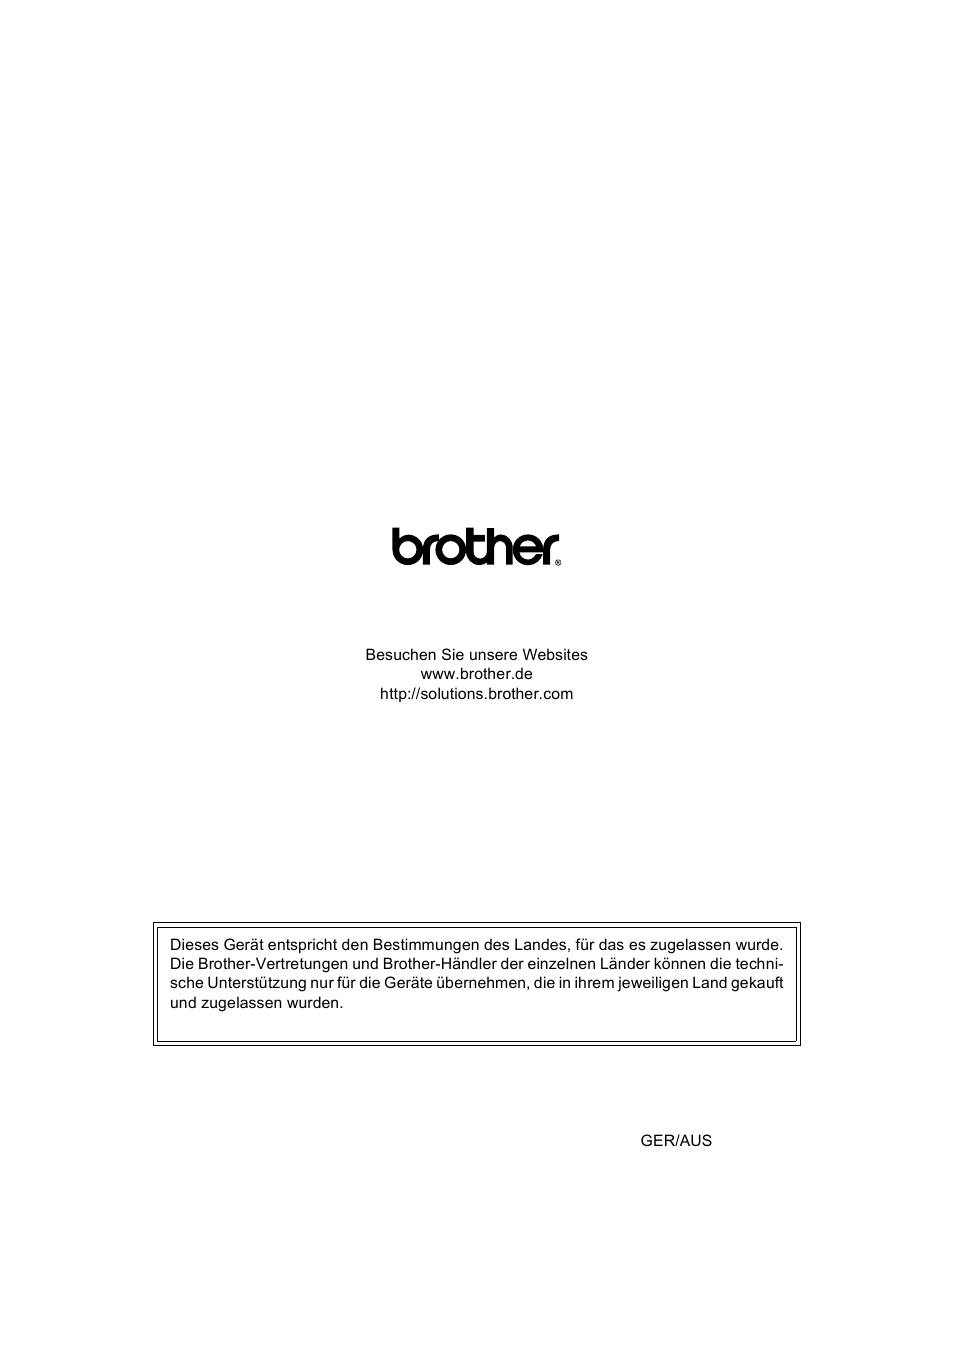 Brother ger/aus | Brother MFC-845CW Benutzerhandbuch | Seite 211 / 211